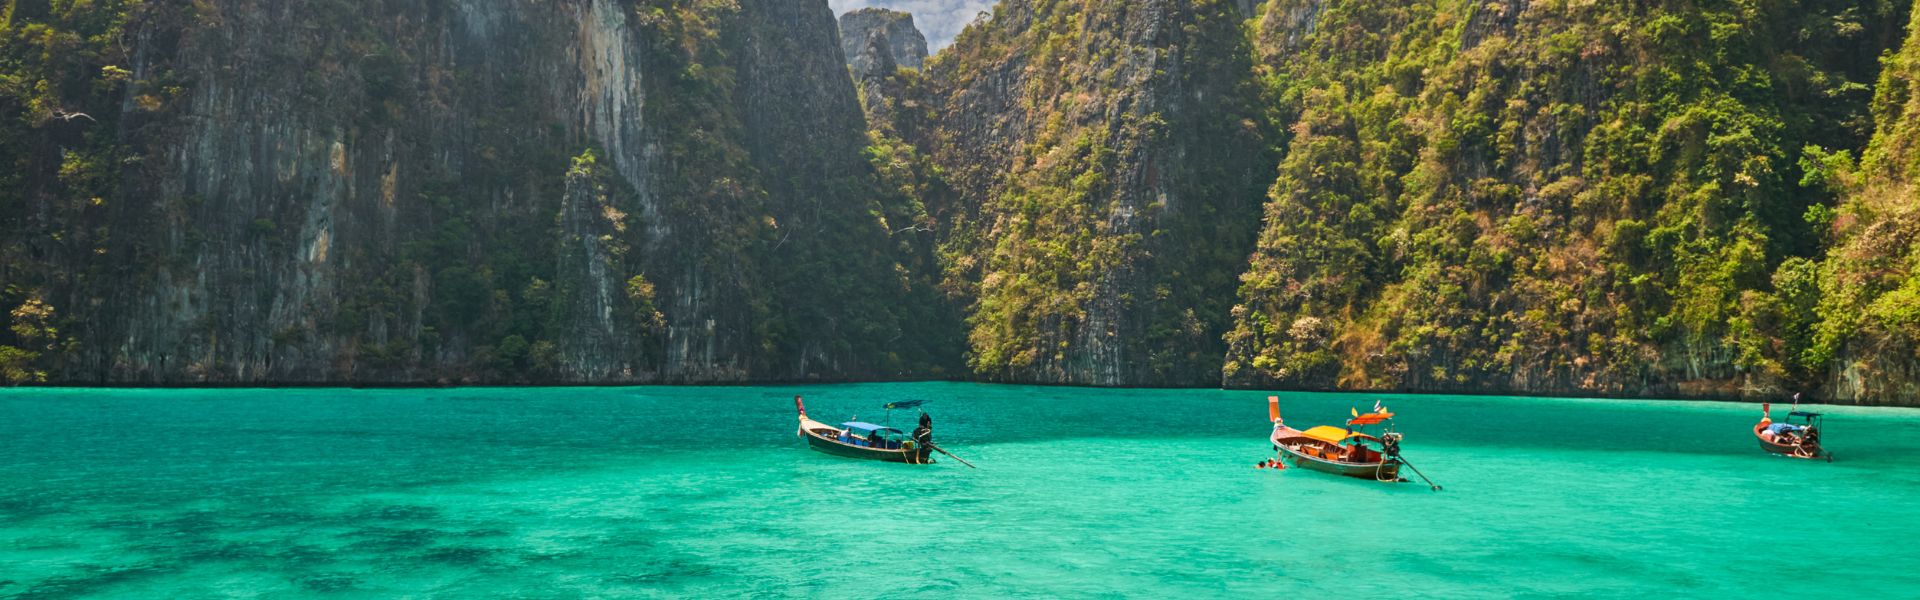 Krabi - Consejos de viaje | Guía de viajes a Tailandia